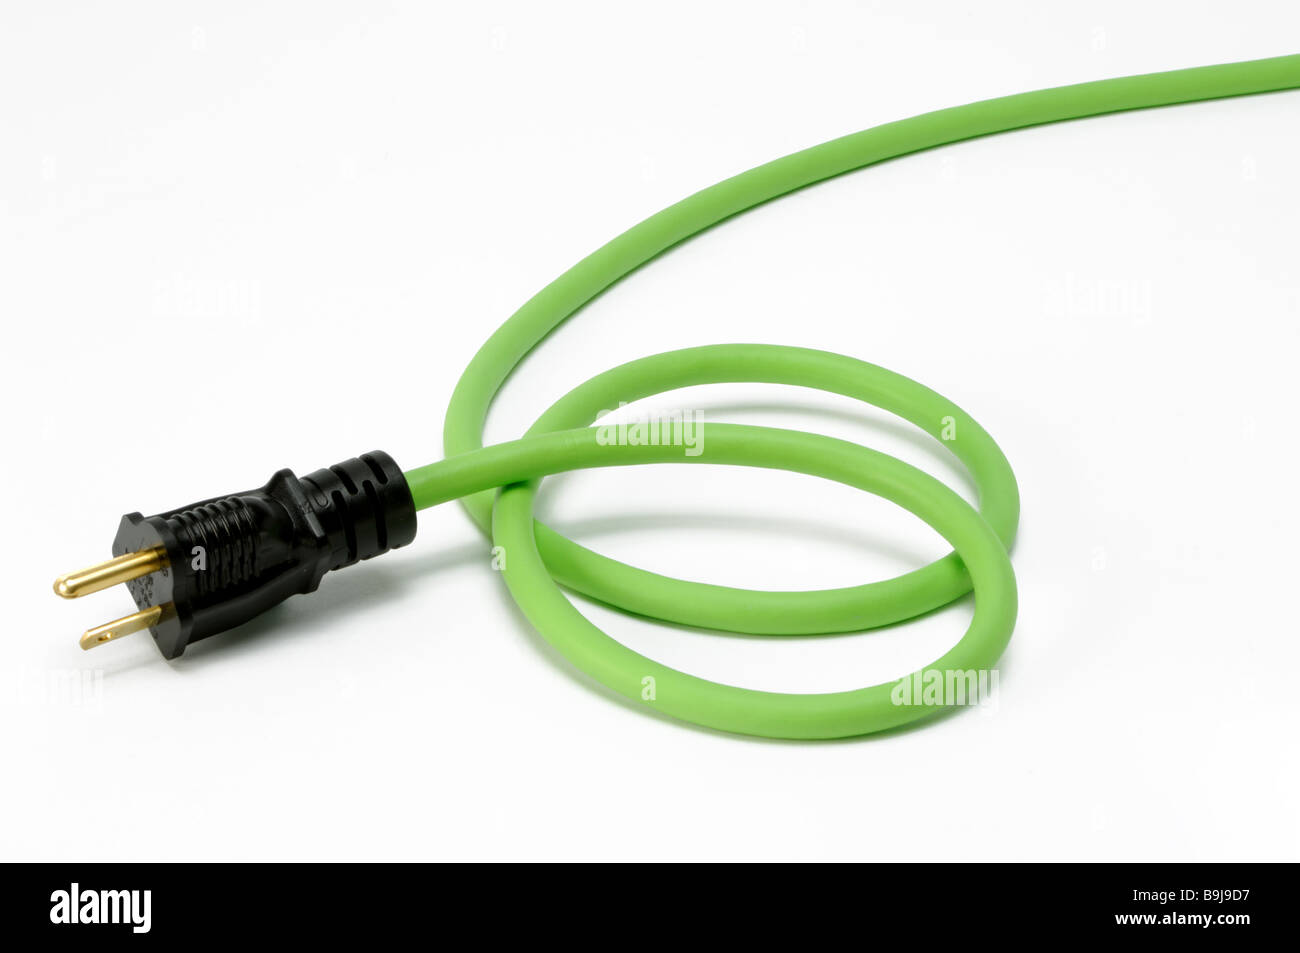 El tapón del extremo de una sección de un verde extensión eléctrica con un enchufe del cable de alimentación Foto de stock